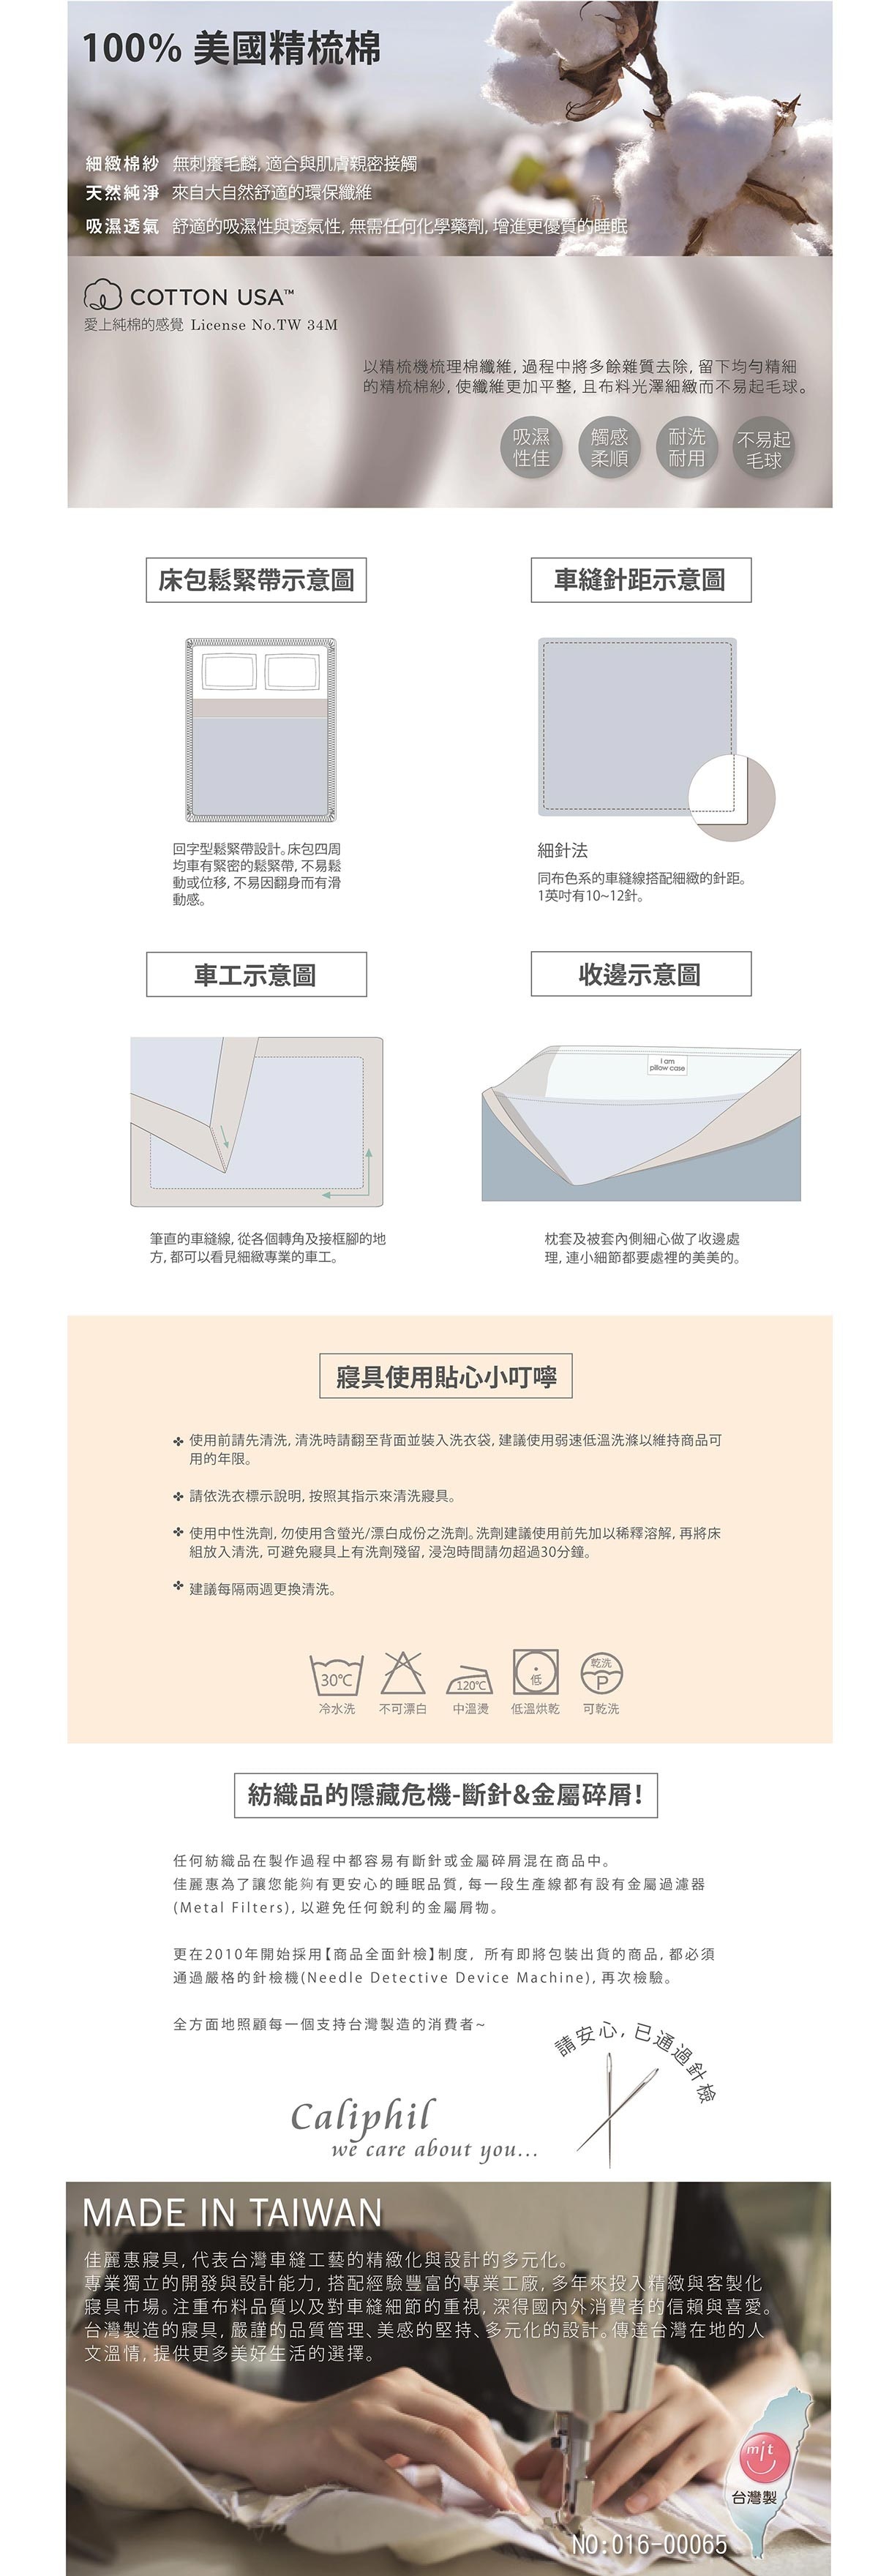 CALIPHIL 單人印花薄件組-米娜，台灣製造，專業精緻的車縫技巧，附MIT保證卡。 床包為全面式鬆緊帶做法，更為牢固與不容易滑動。